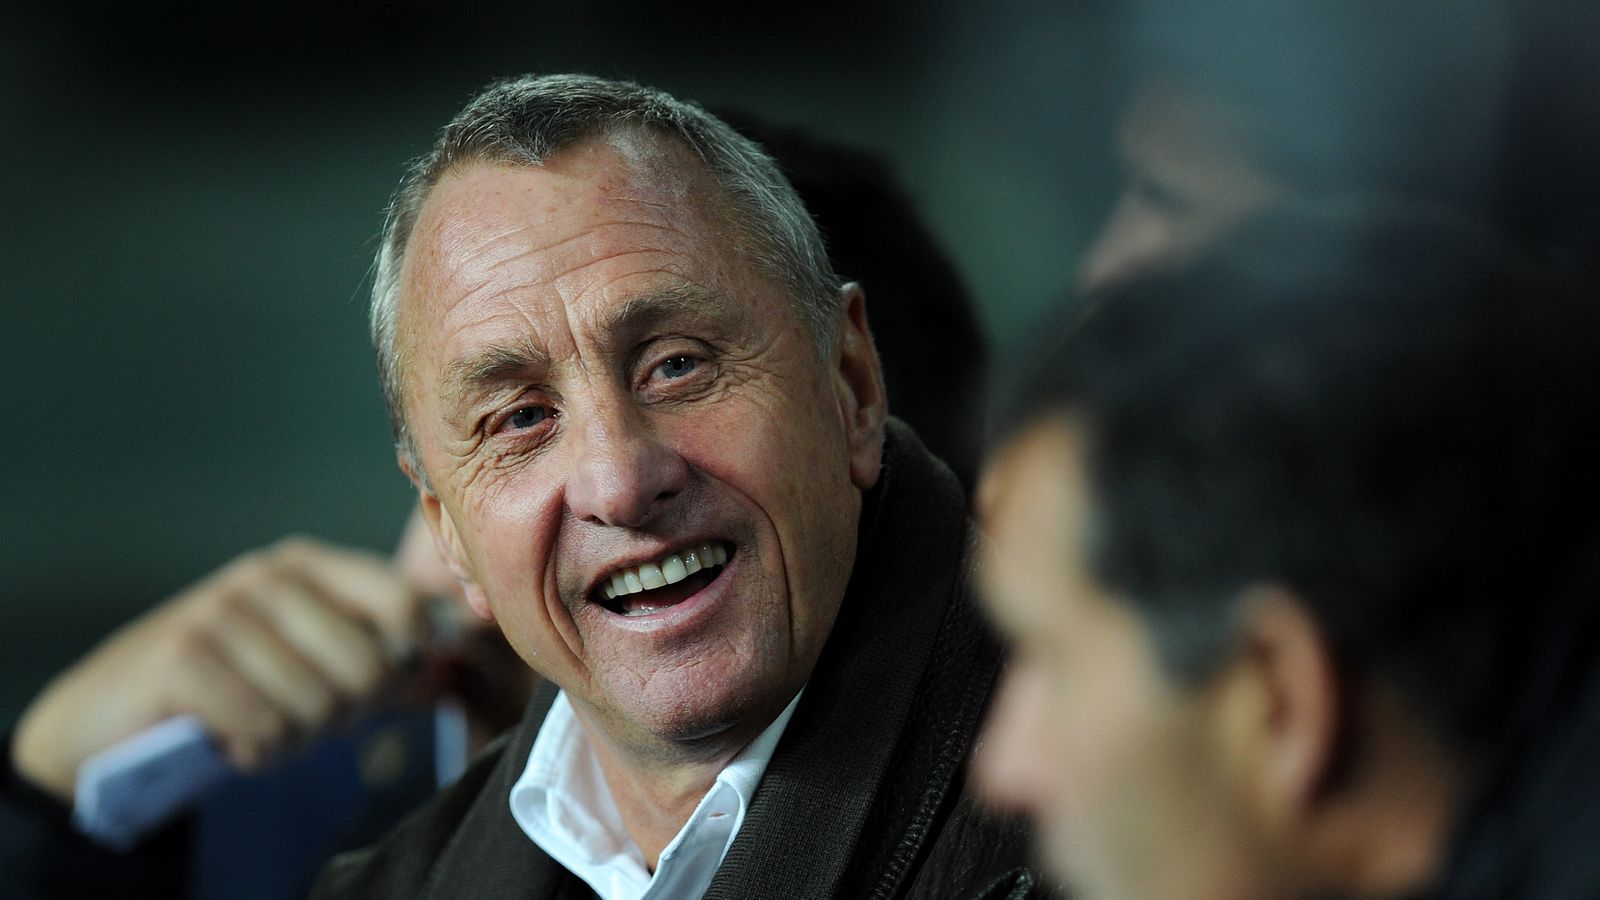 Johan Cruyff 'winning' battle against lung cancer | Football News | Sky ...